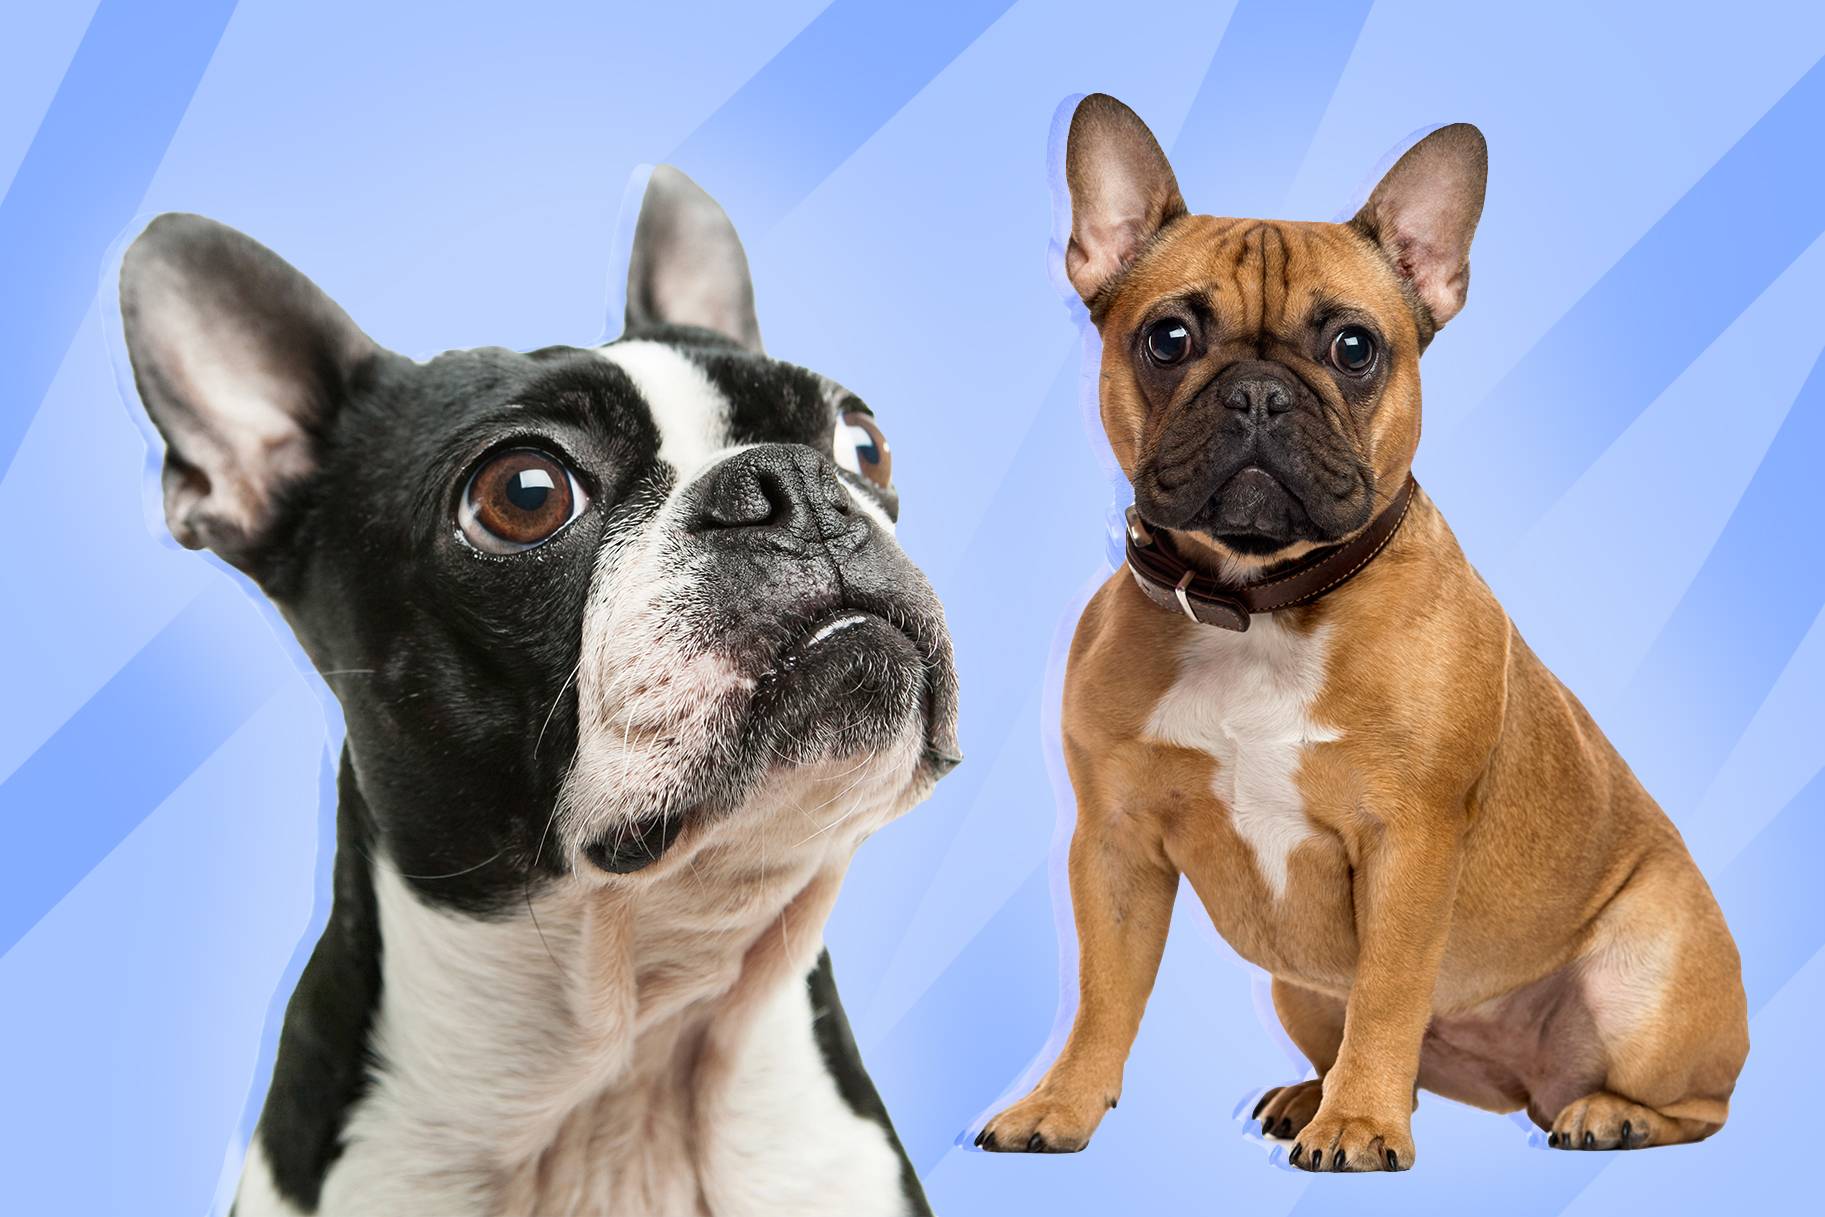 Французский бульдог и похожие на него породы: разновидности собак и описание их особенностей